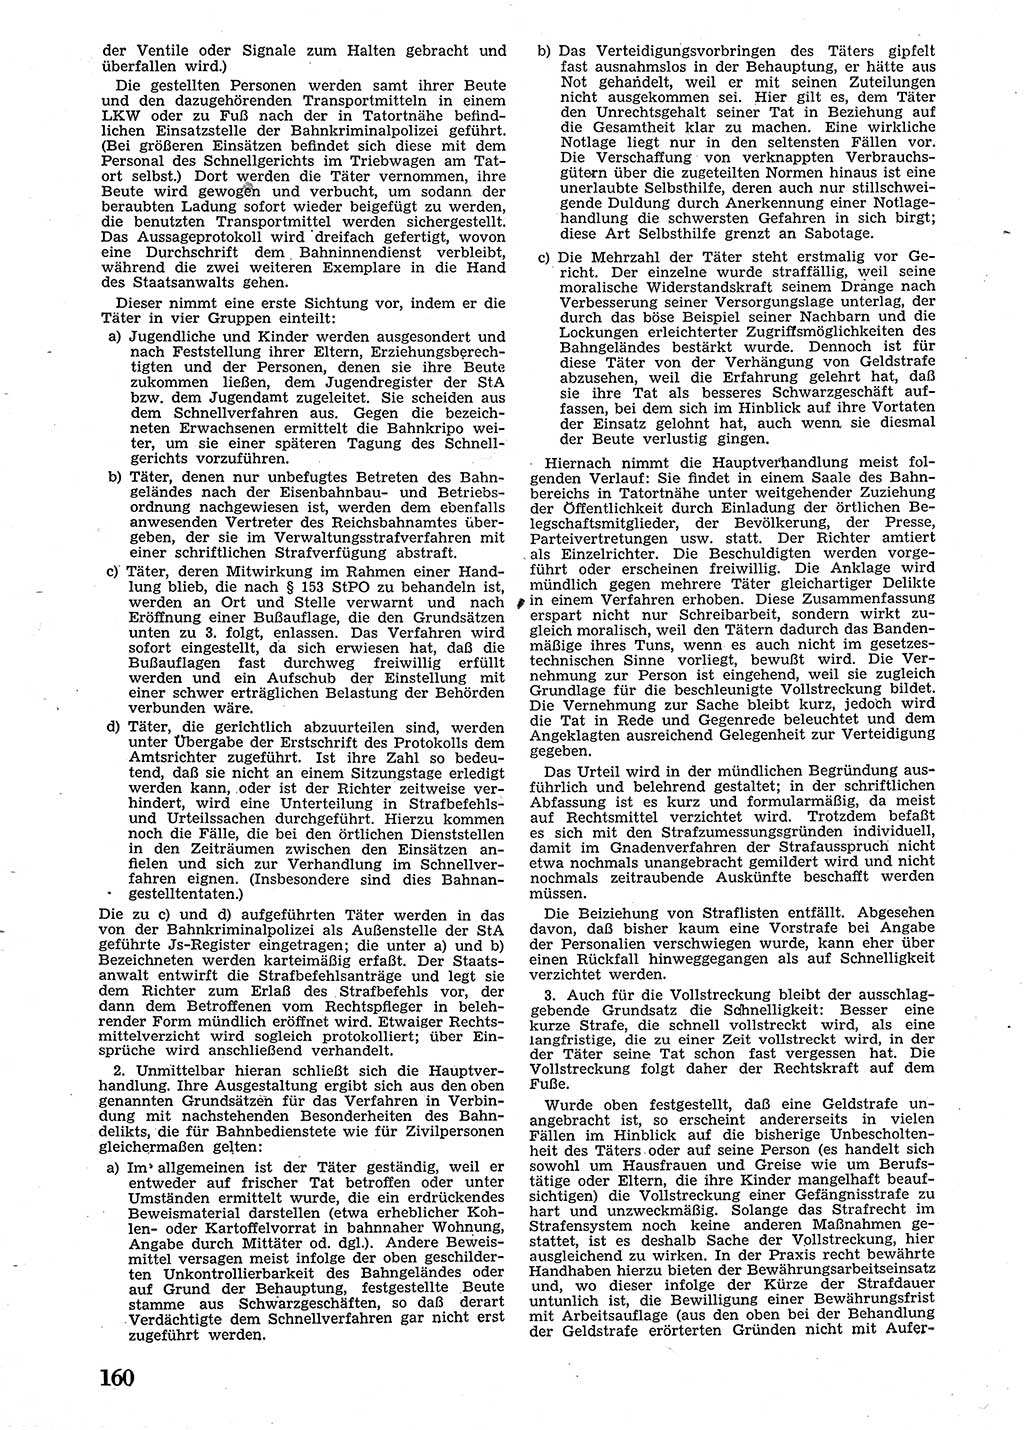 Neue Justiz (NJ), Zeitschrift für Recht und Rechtswissenschaft [Sowjetische Besatzungszone (SBZ) Deutschland], 2. Jahrgang 1948, Seite 160 (NJ SBZ Dtl. 1948, S. 160)